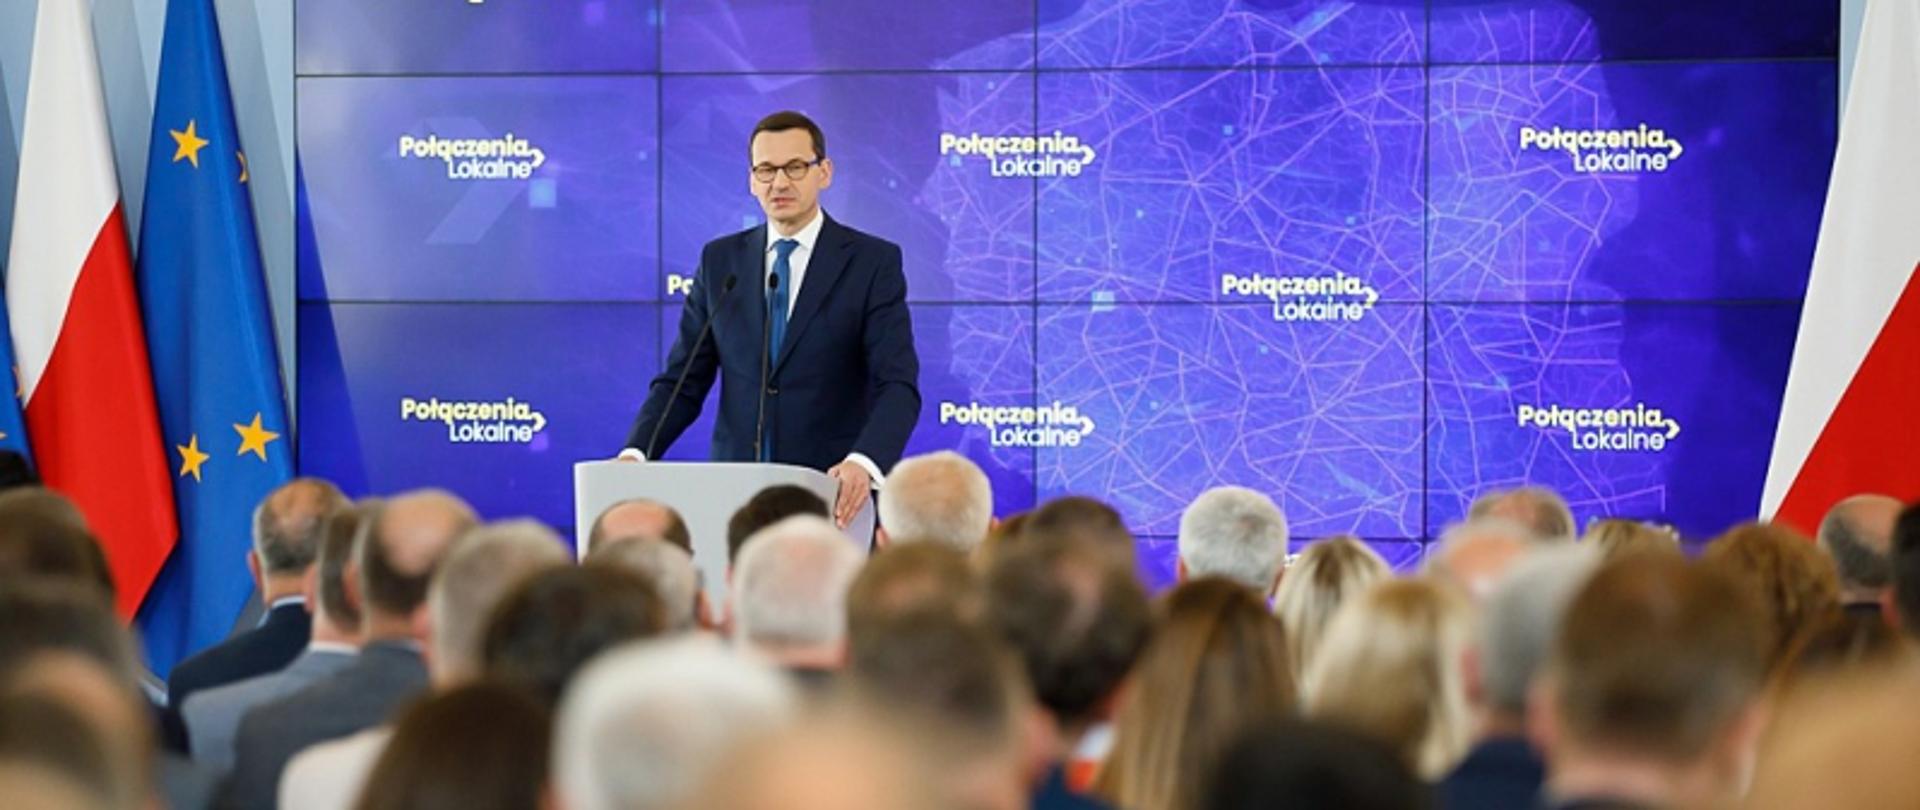 Premier Mateusz Morawiecki o odbudowie połączeń lokalnych
